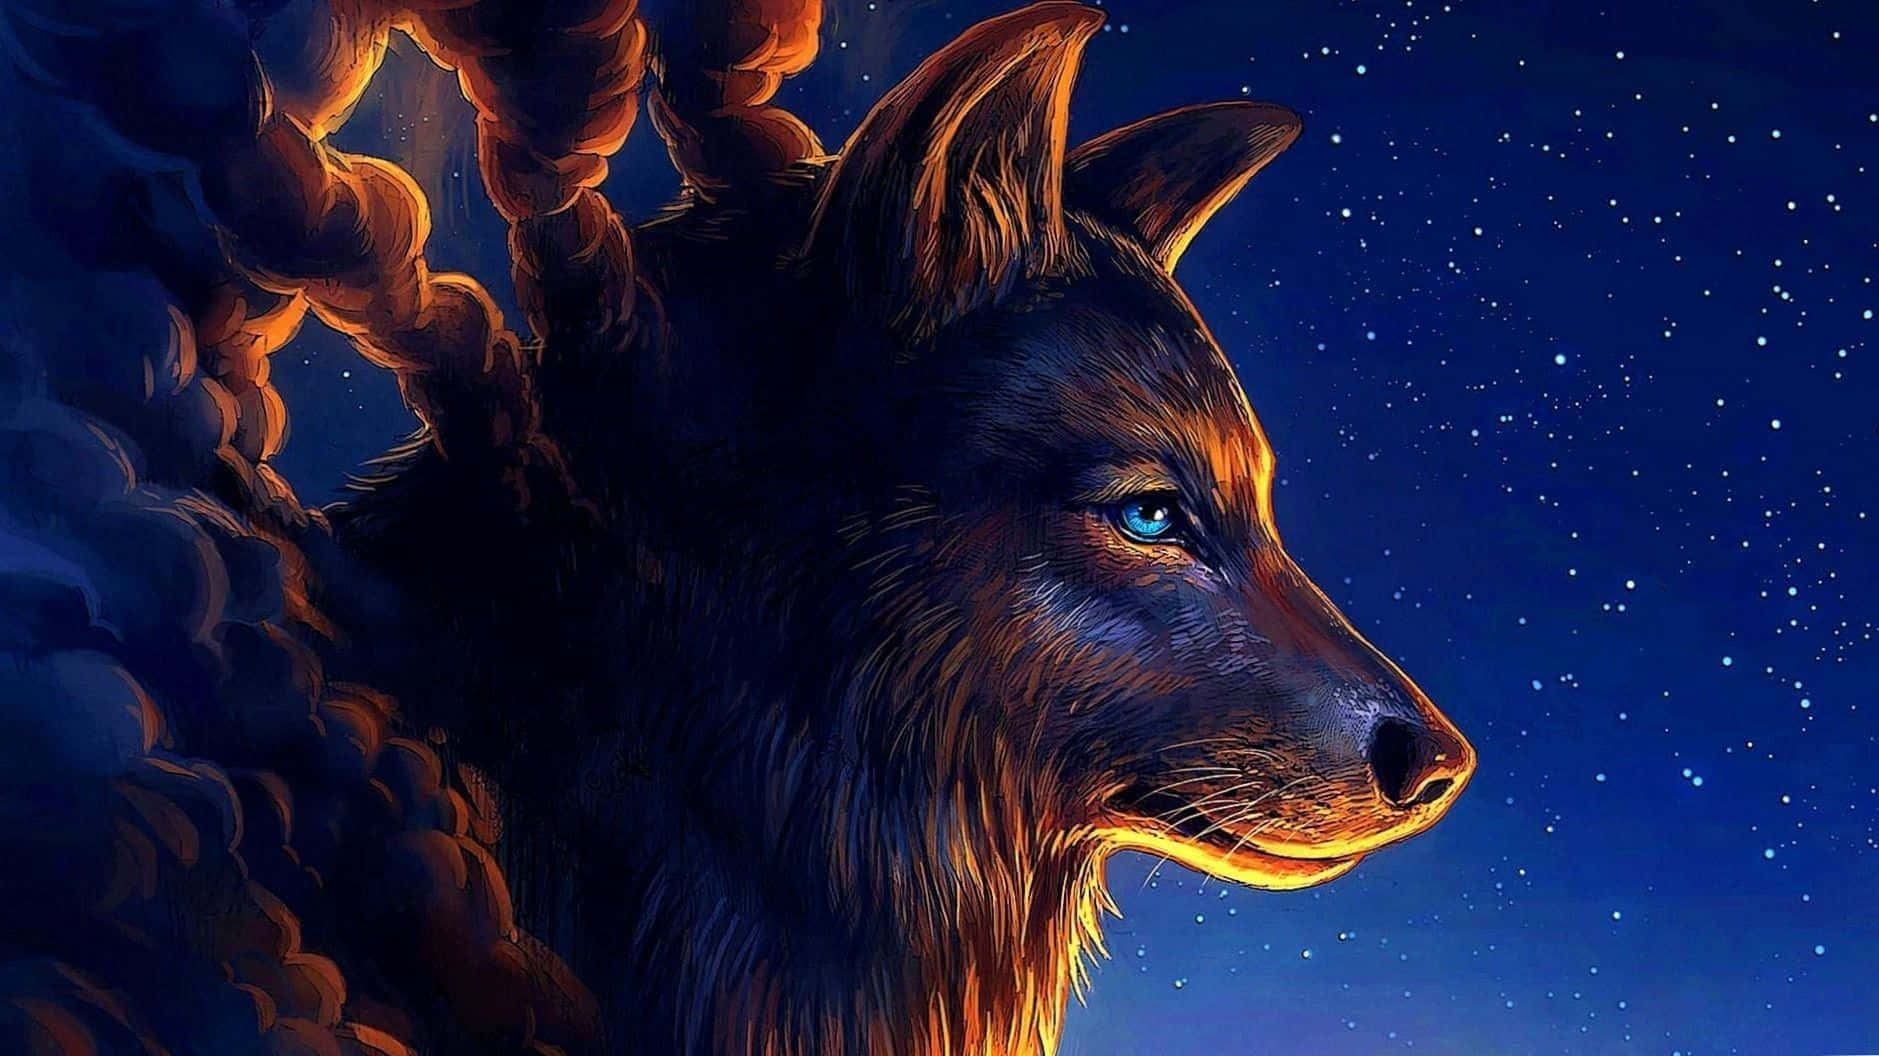 Mystical Wolf Art: A Majestic Beast Under the Moonlight Wallpaper